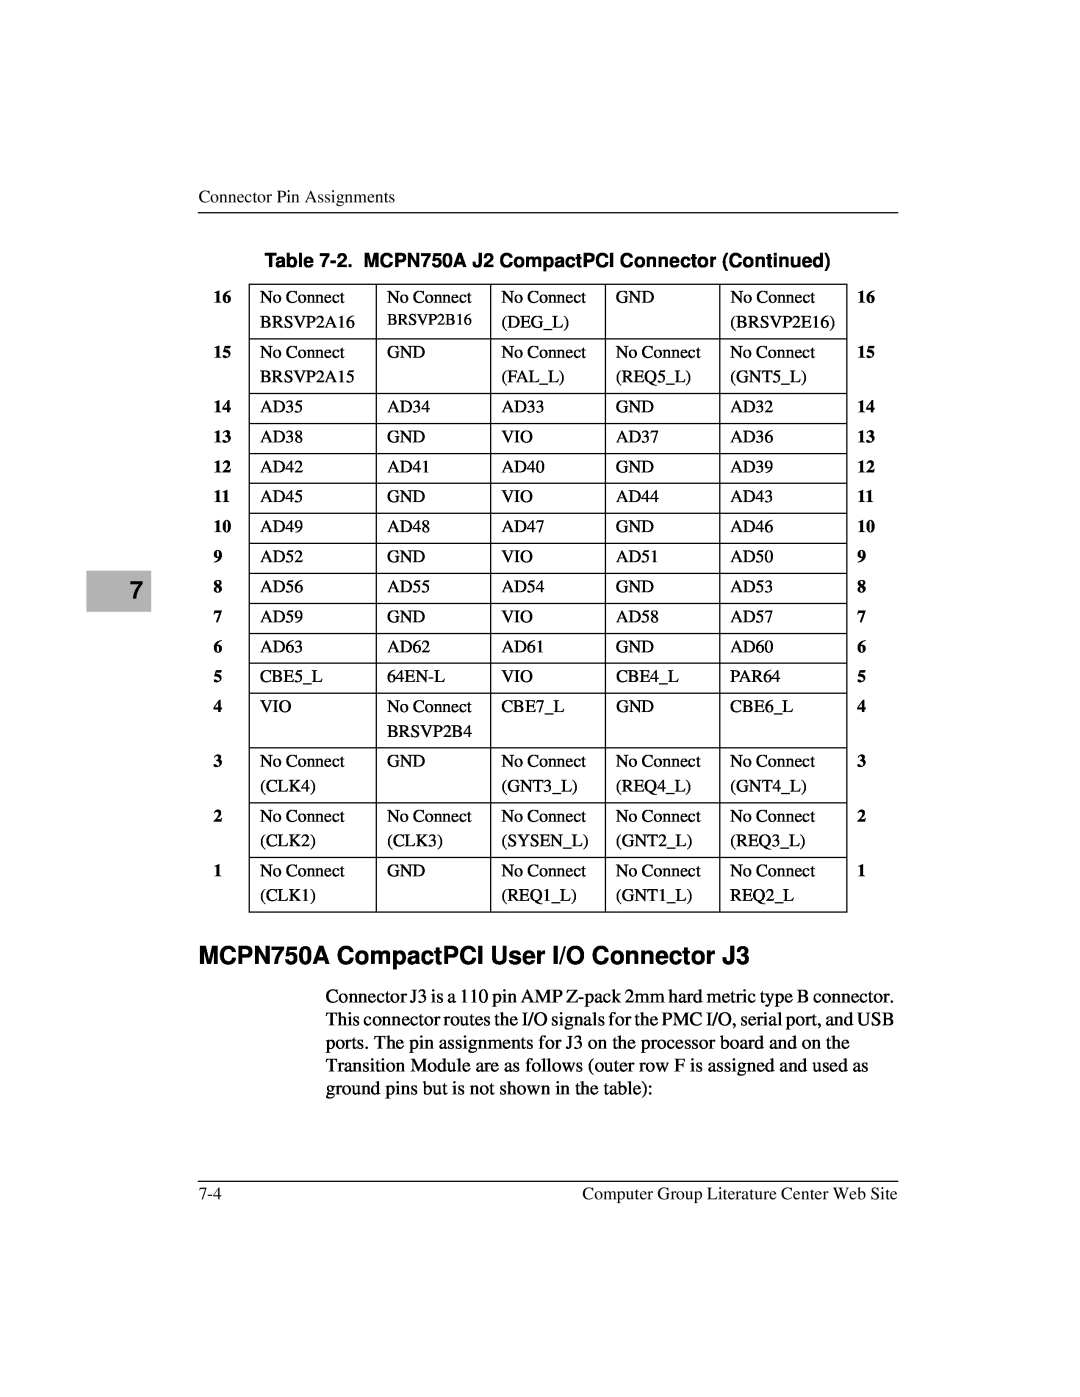 Motorola IH5 manual MCPN750A CompactPCI User I/O Connector J3, 2. MCPN750A J2 CompactPCI Connector Continued 